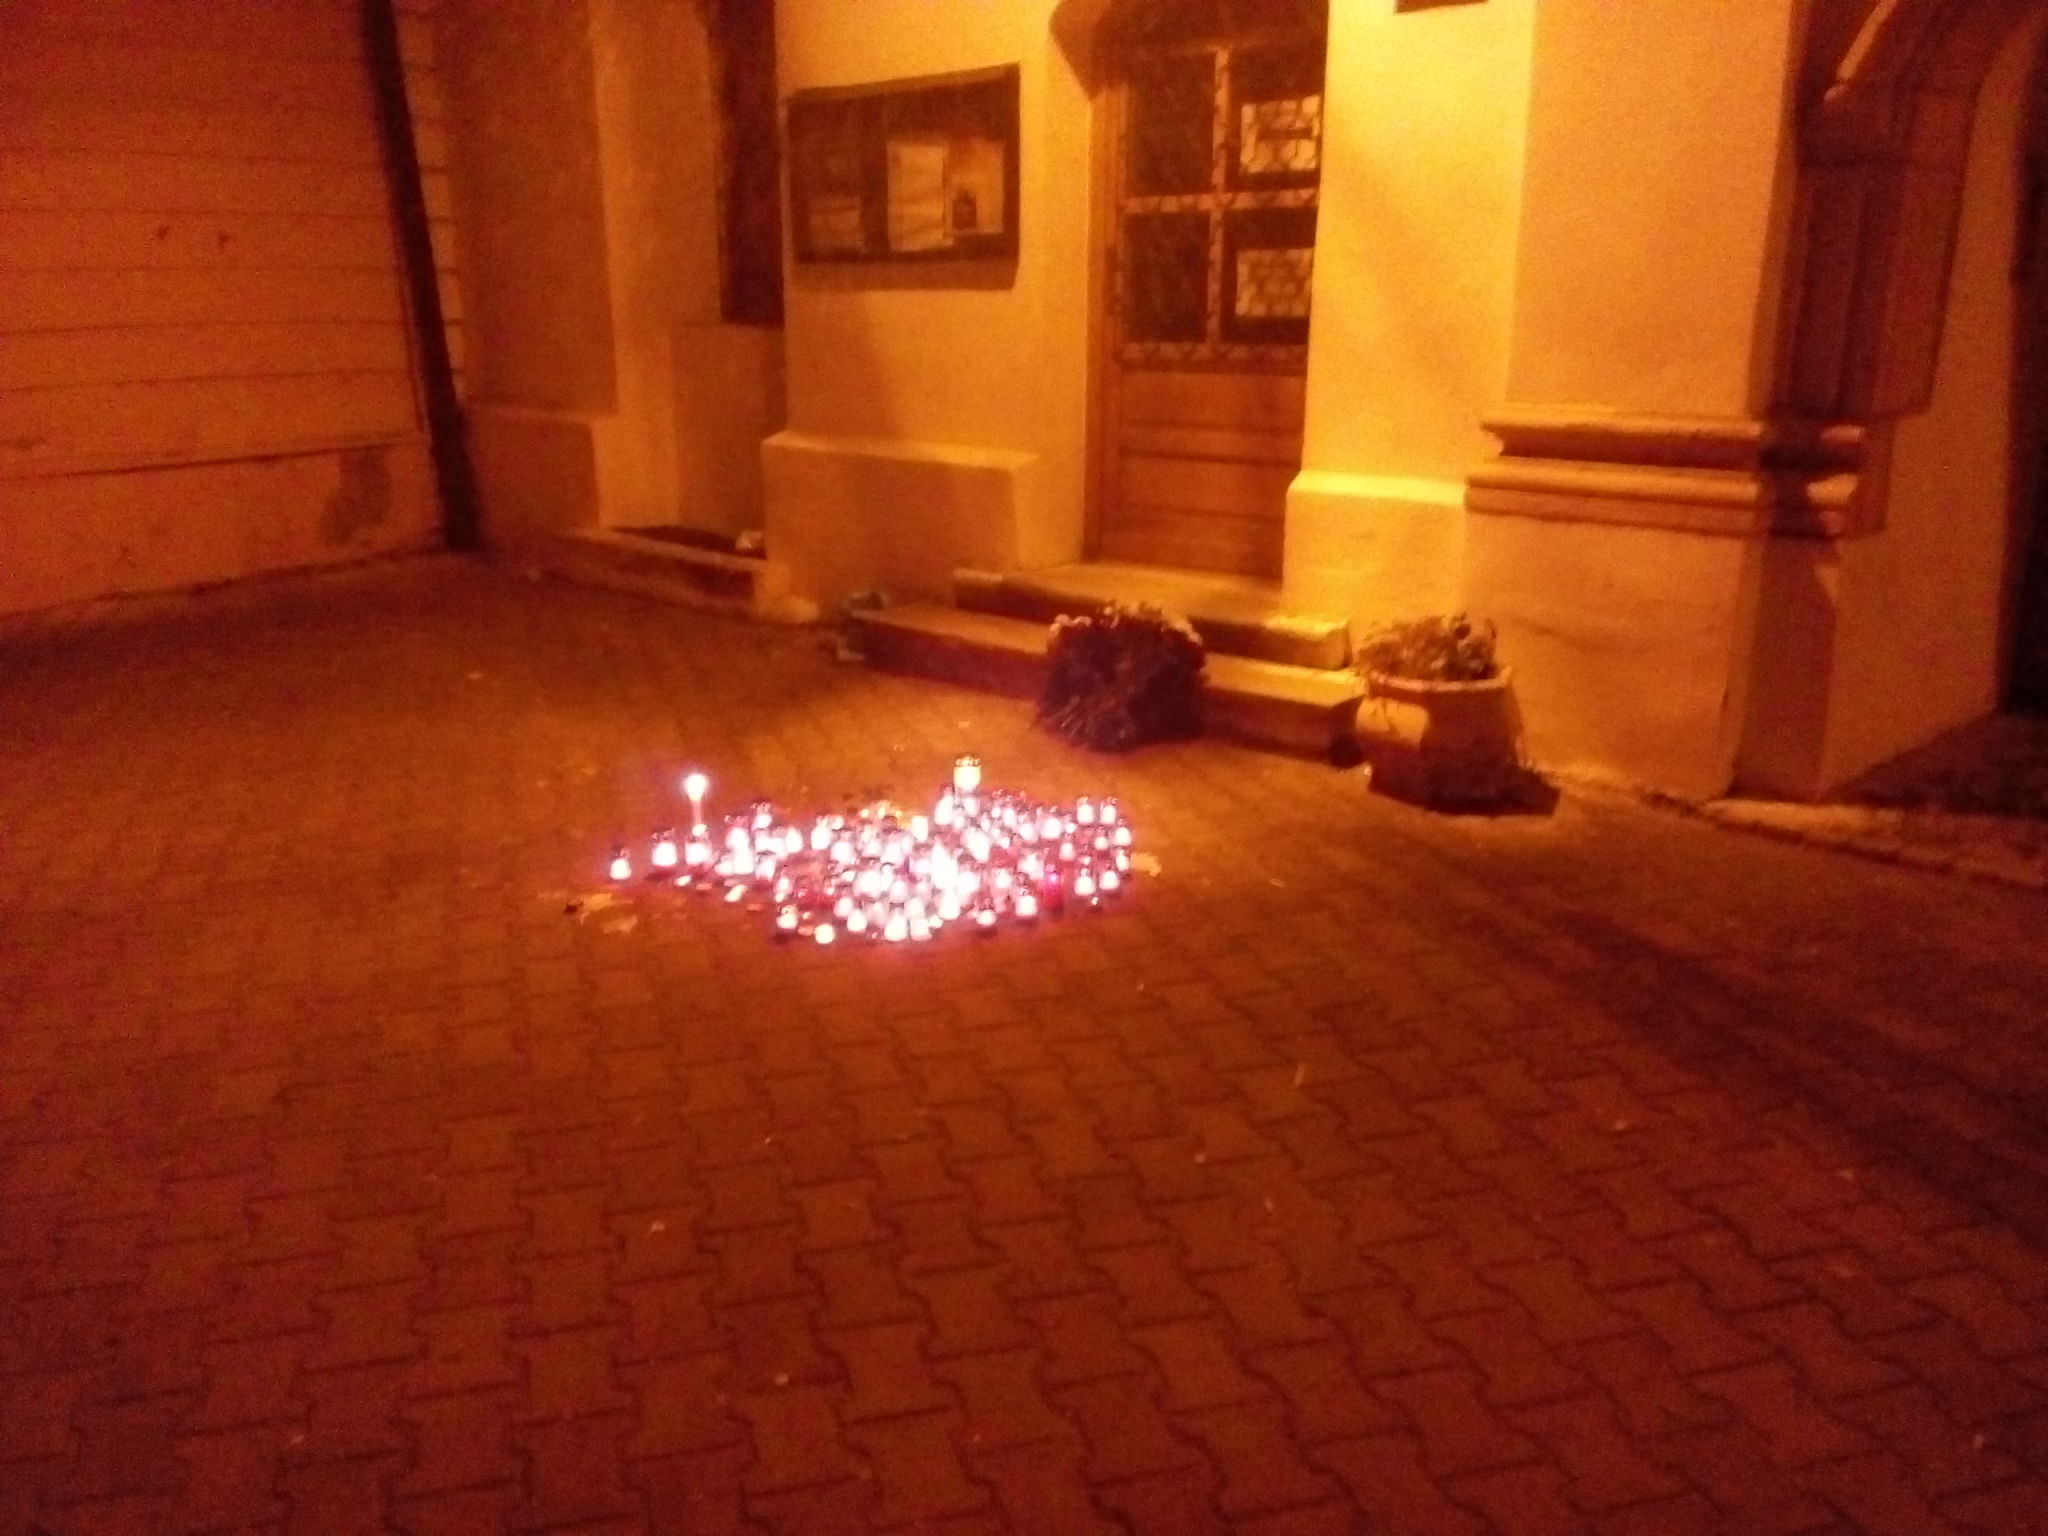 foto - medieșenii solidari cu victimele tragediei din club colectiv. sute de lumânări aprinse în centrul orașului!